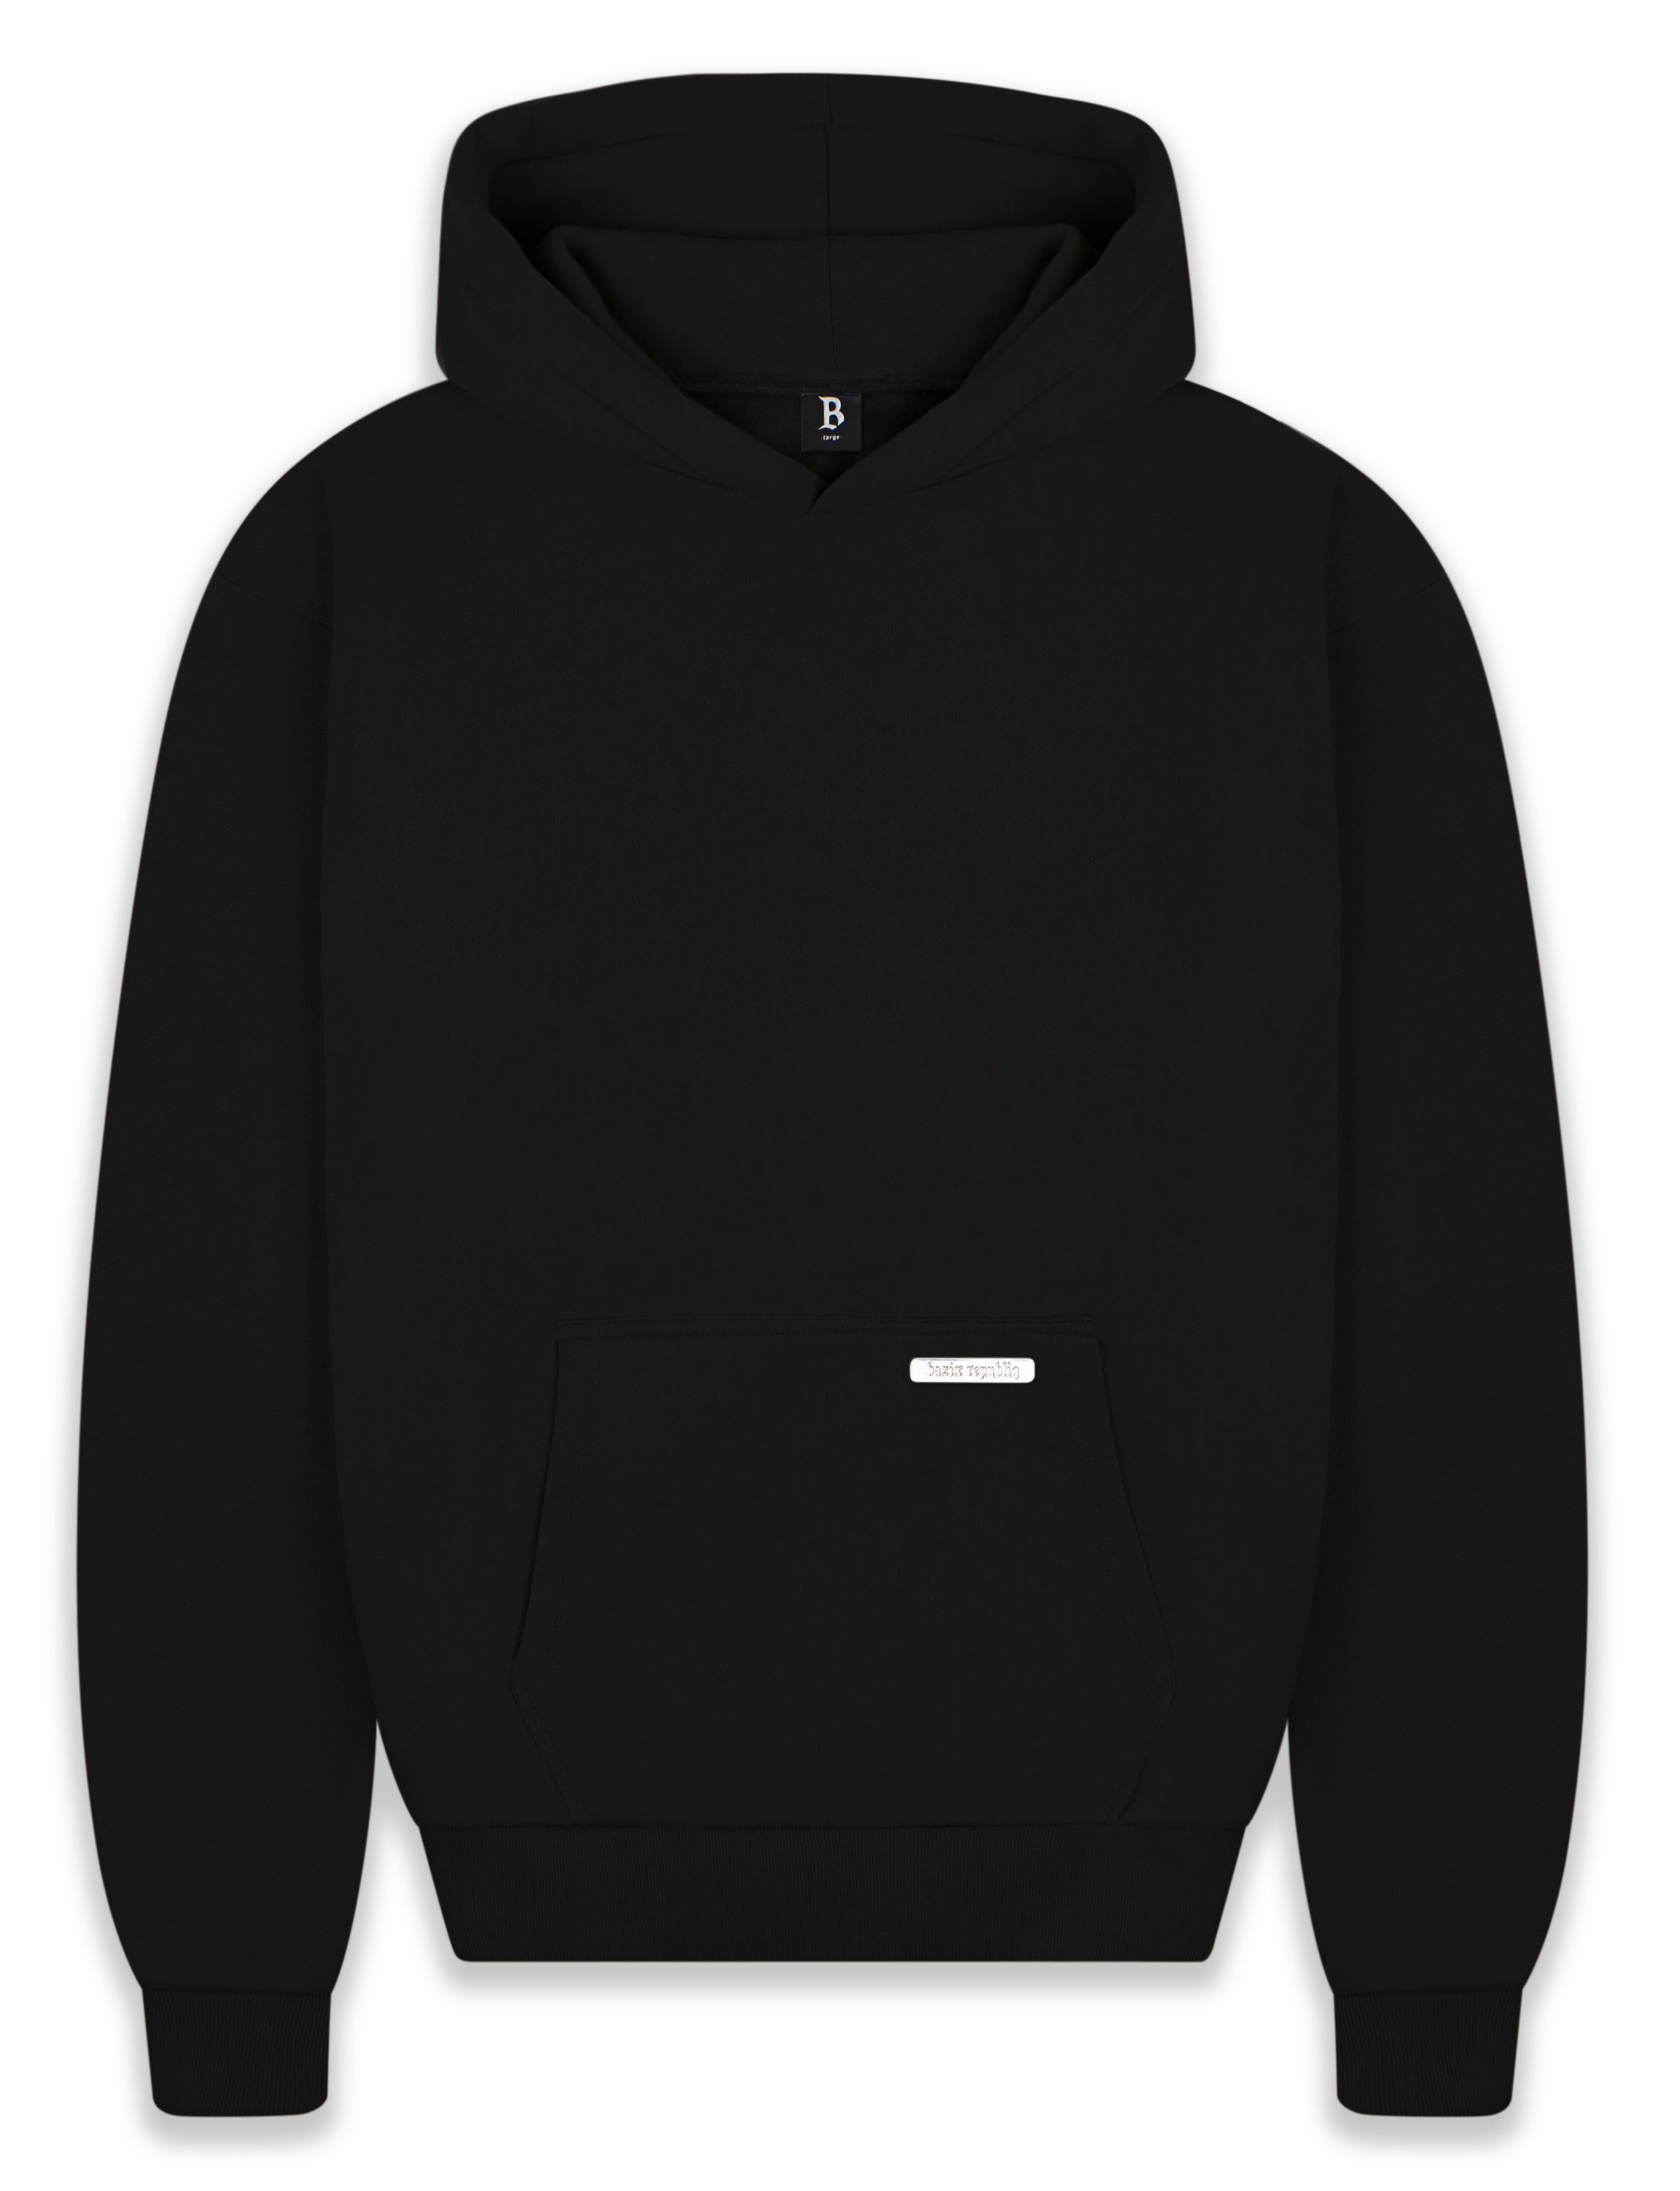 Black Kapuzen-Pullover Hoodie Heavy Sweater Hoodie Herren Dropsize Oversize BR-H-1 GSM Herren 430